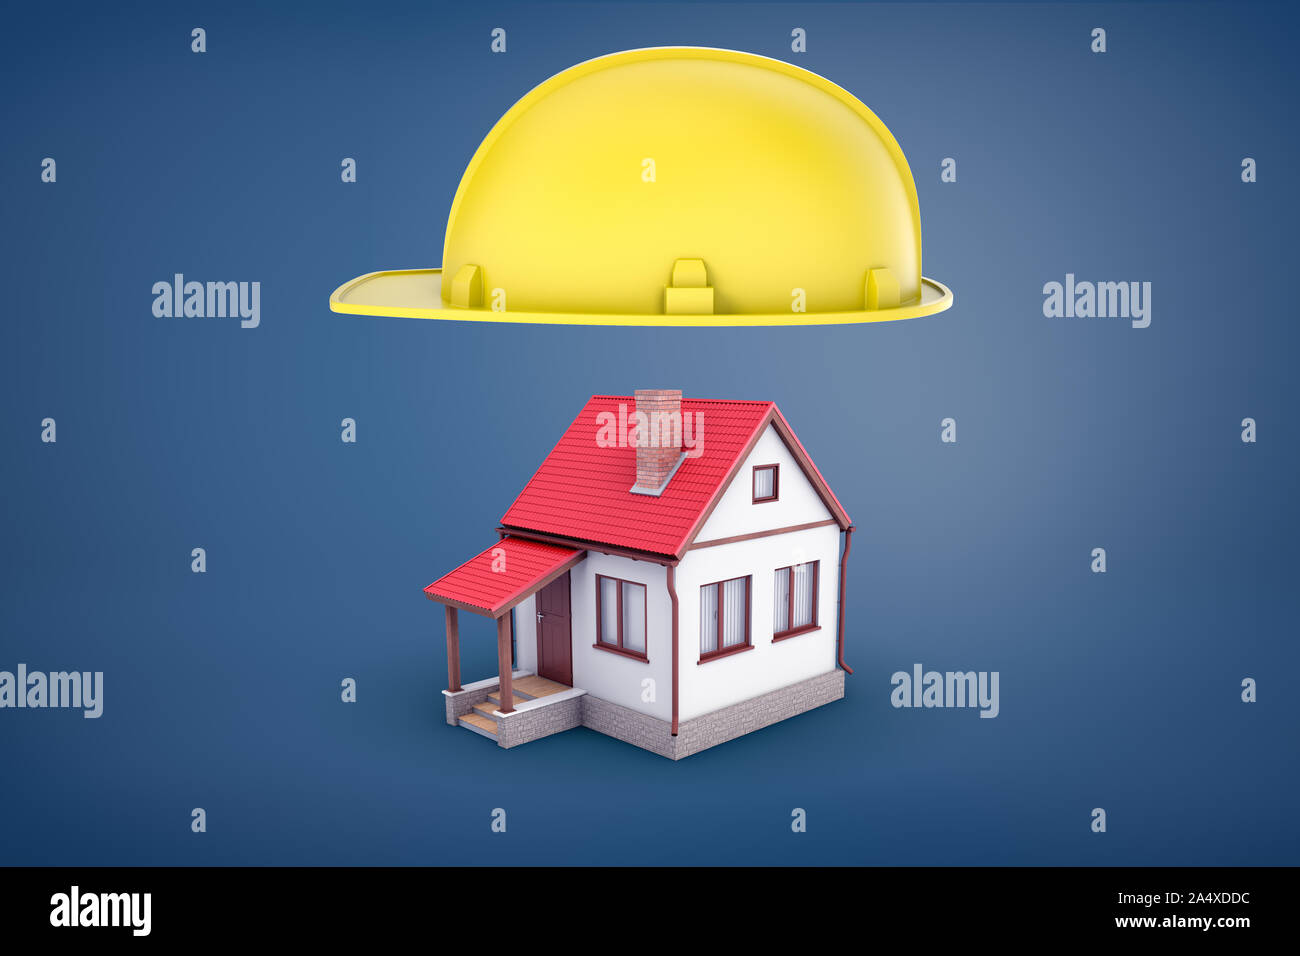 3D-Rendering von grossen gelben Bau hardhat schwebt über ein eigenes kleines Haus mit rotem Dach. Stockfoto